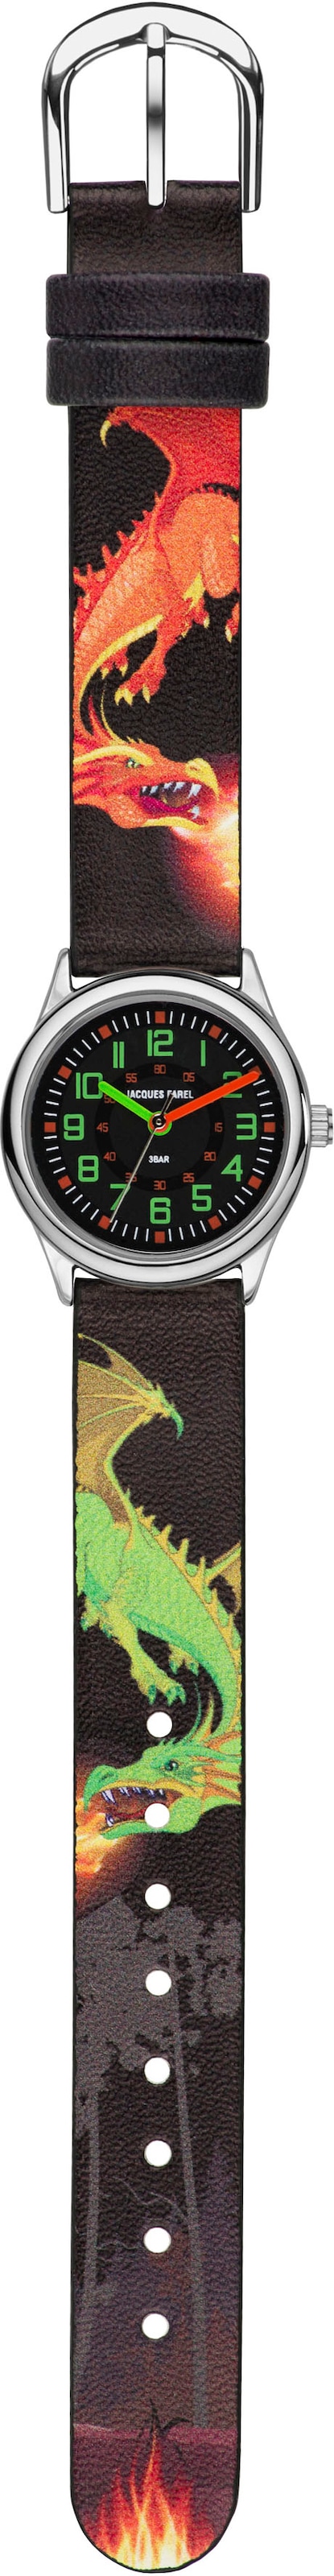 Jacques Farel Quarzuhr »Dinosaurieruhr, HCC 333«, Armbanduhr, Kinderuhr, ideal auch als Geschenk, mit Dinosauriermotiv